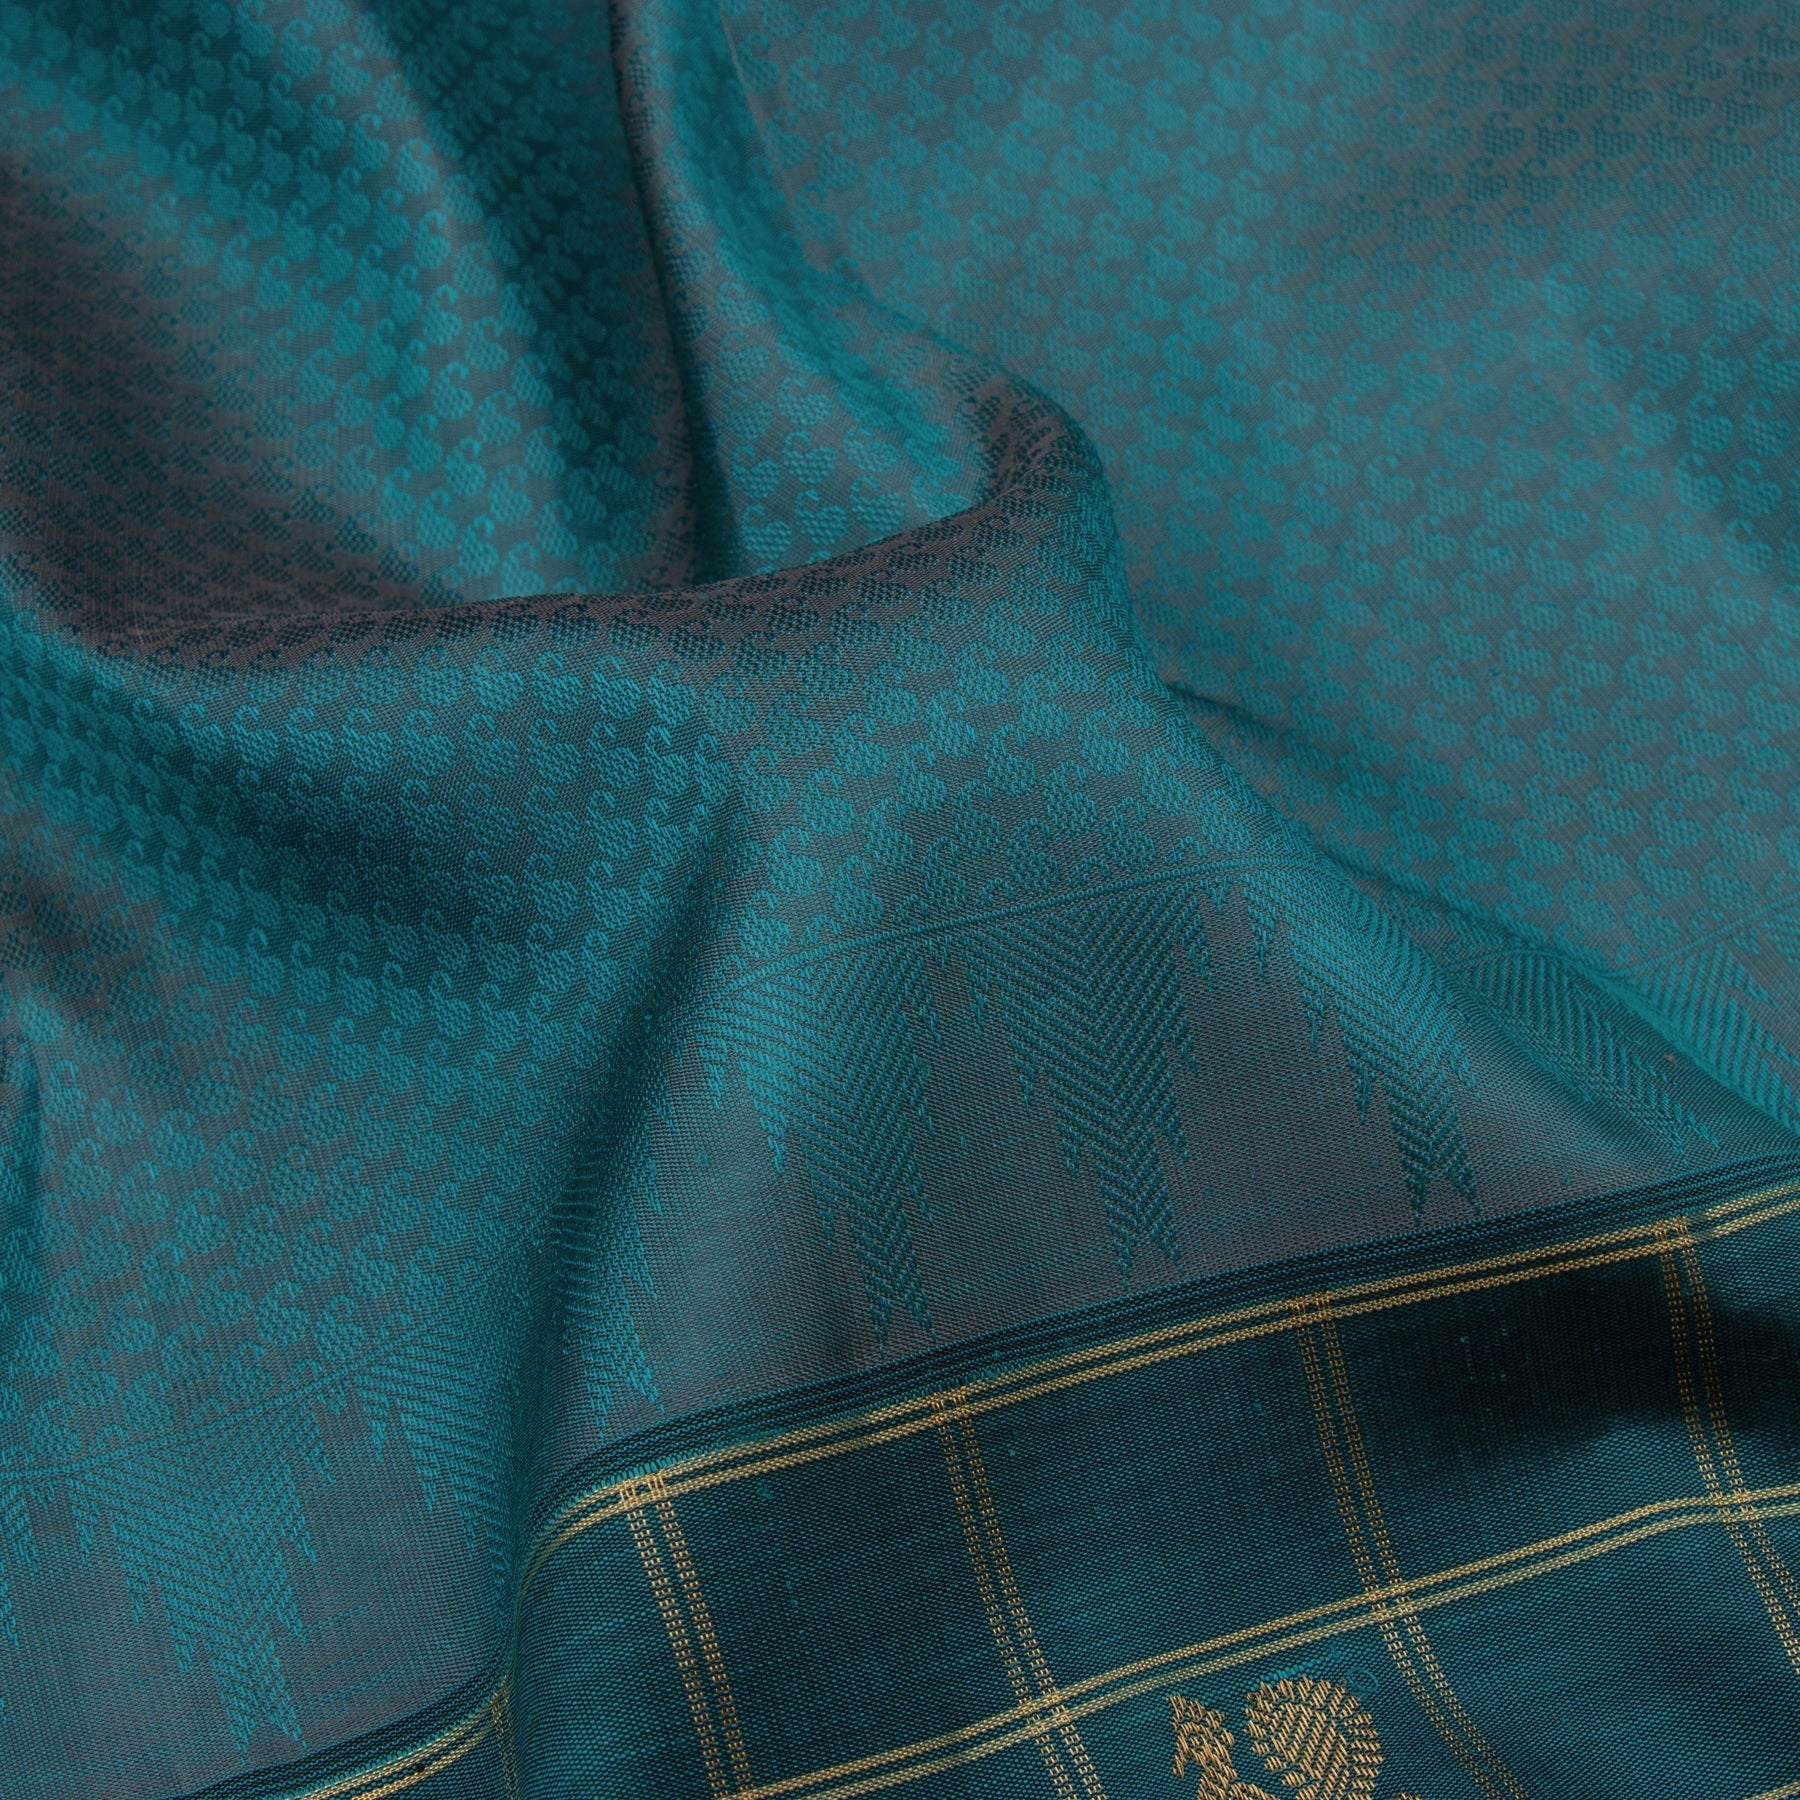 Kanakavalli Kanjivaram Silk Sari 22-599-HS001-05286 - Fabric View